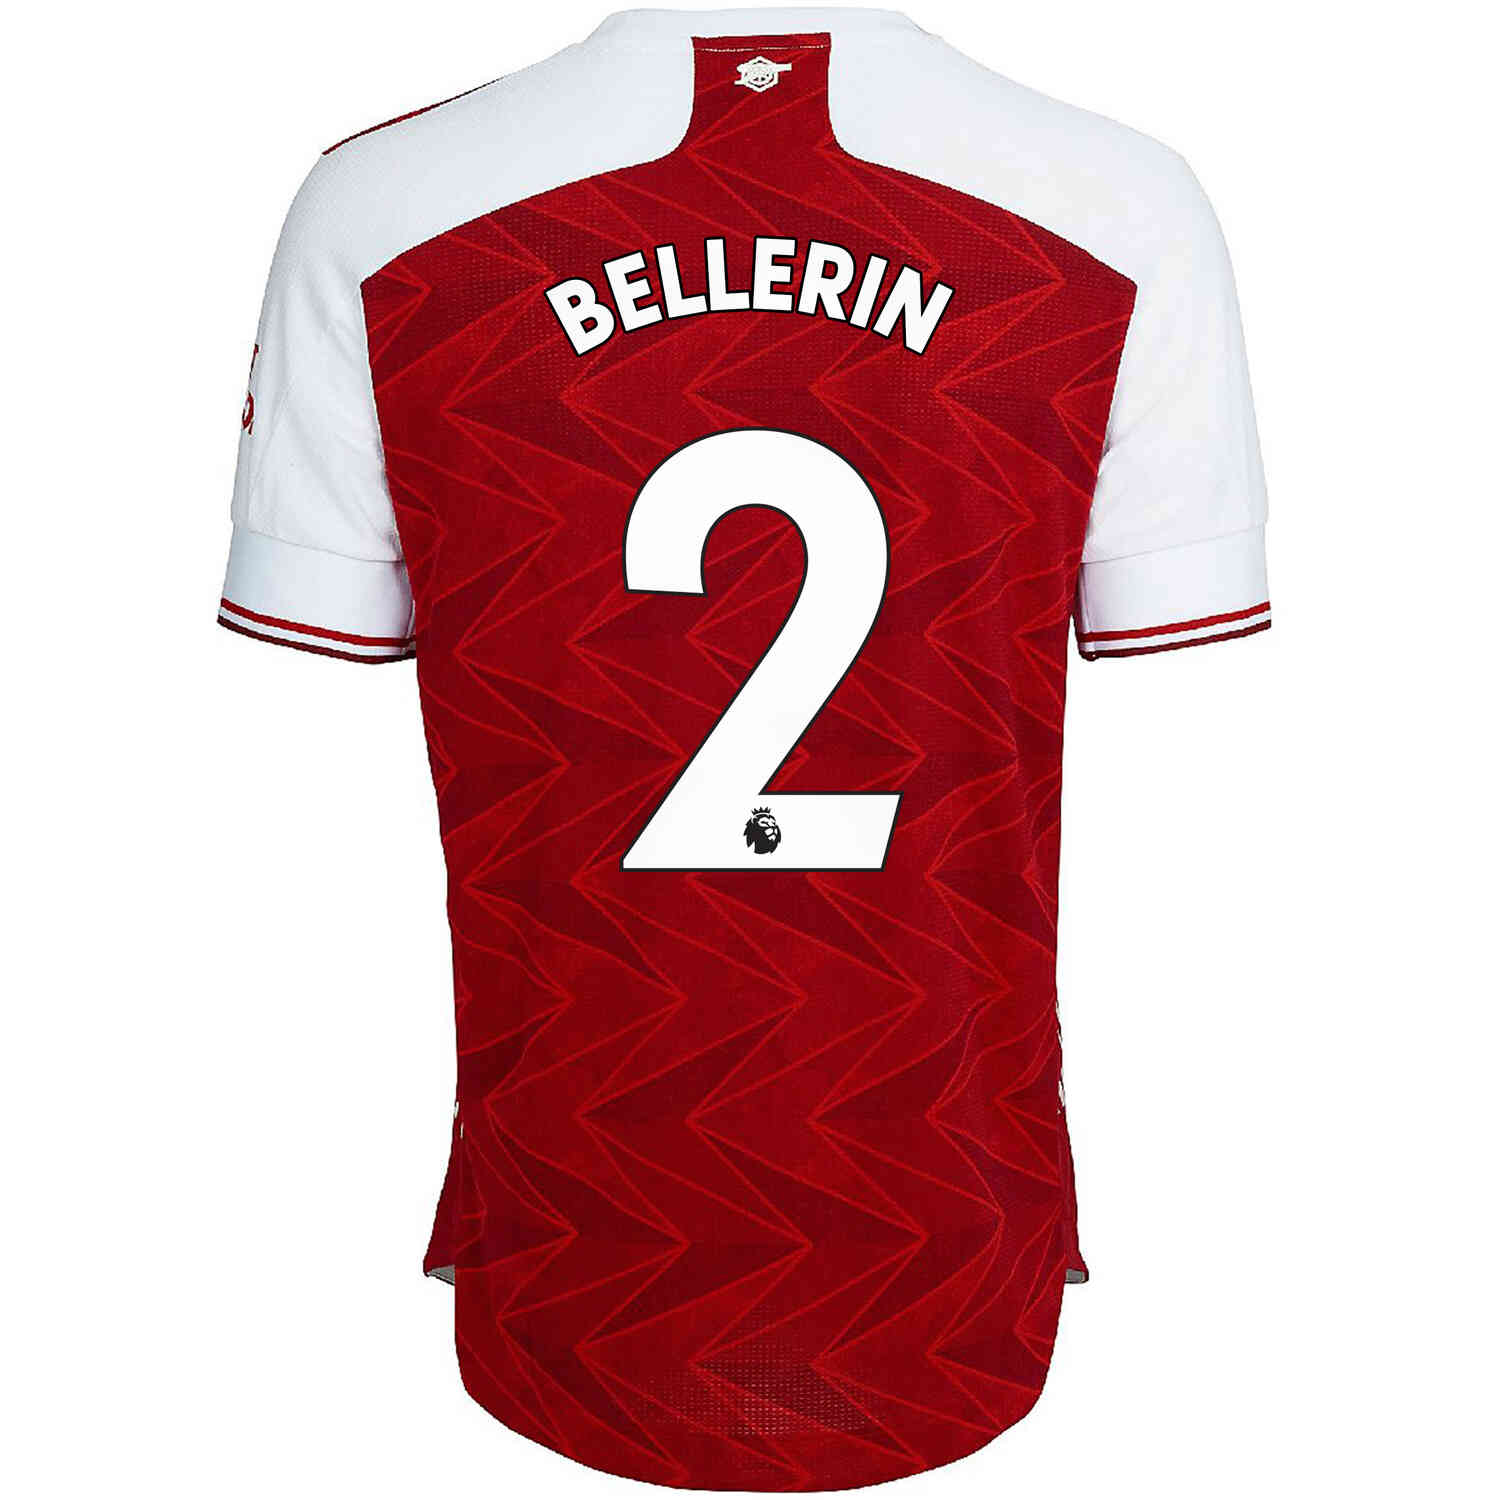 hector bellerin jersey number